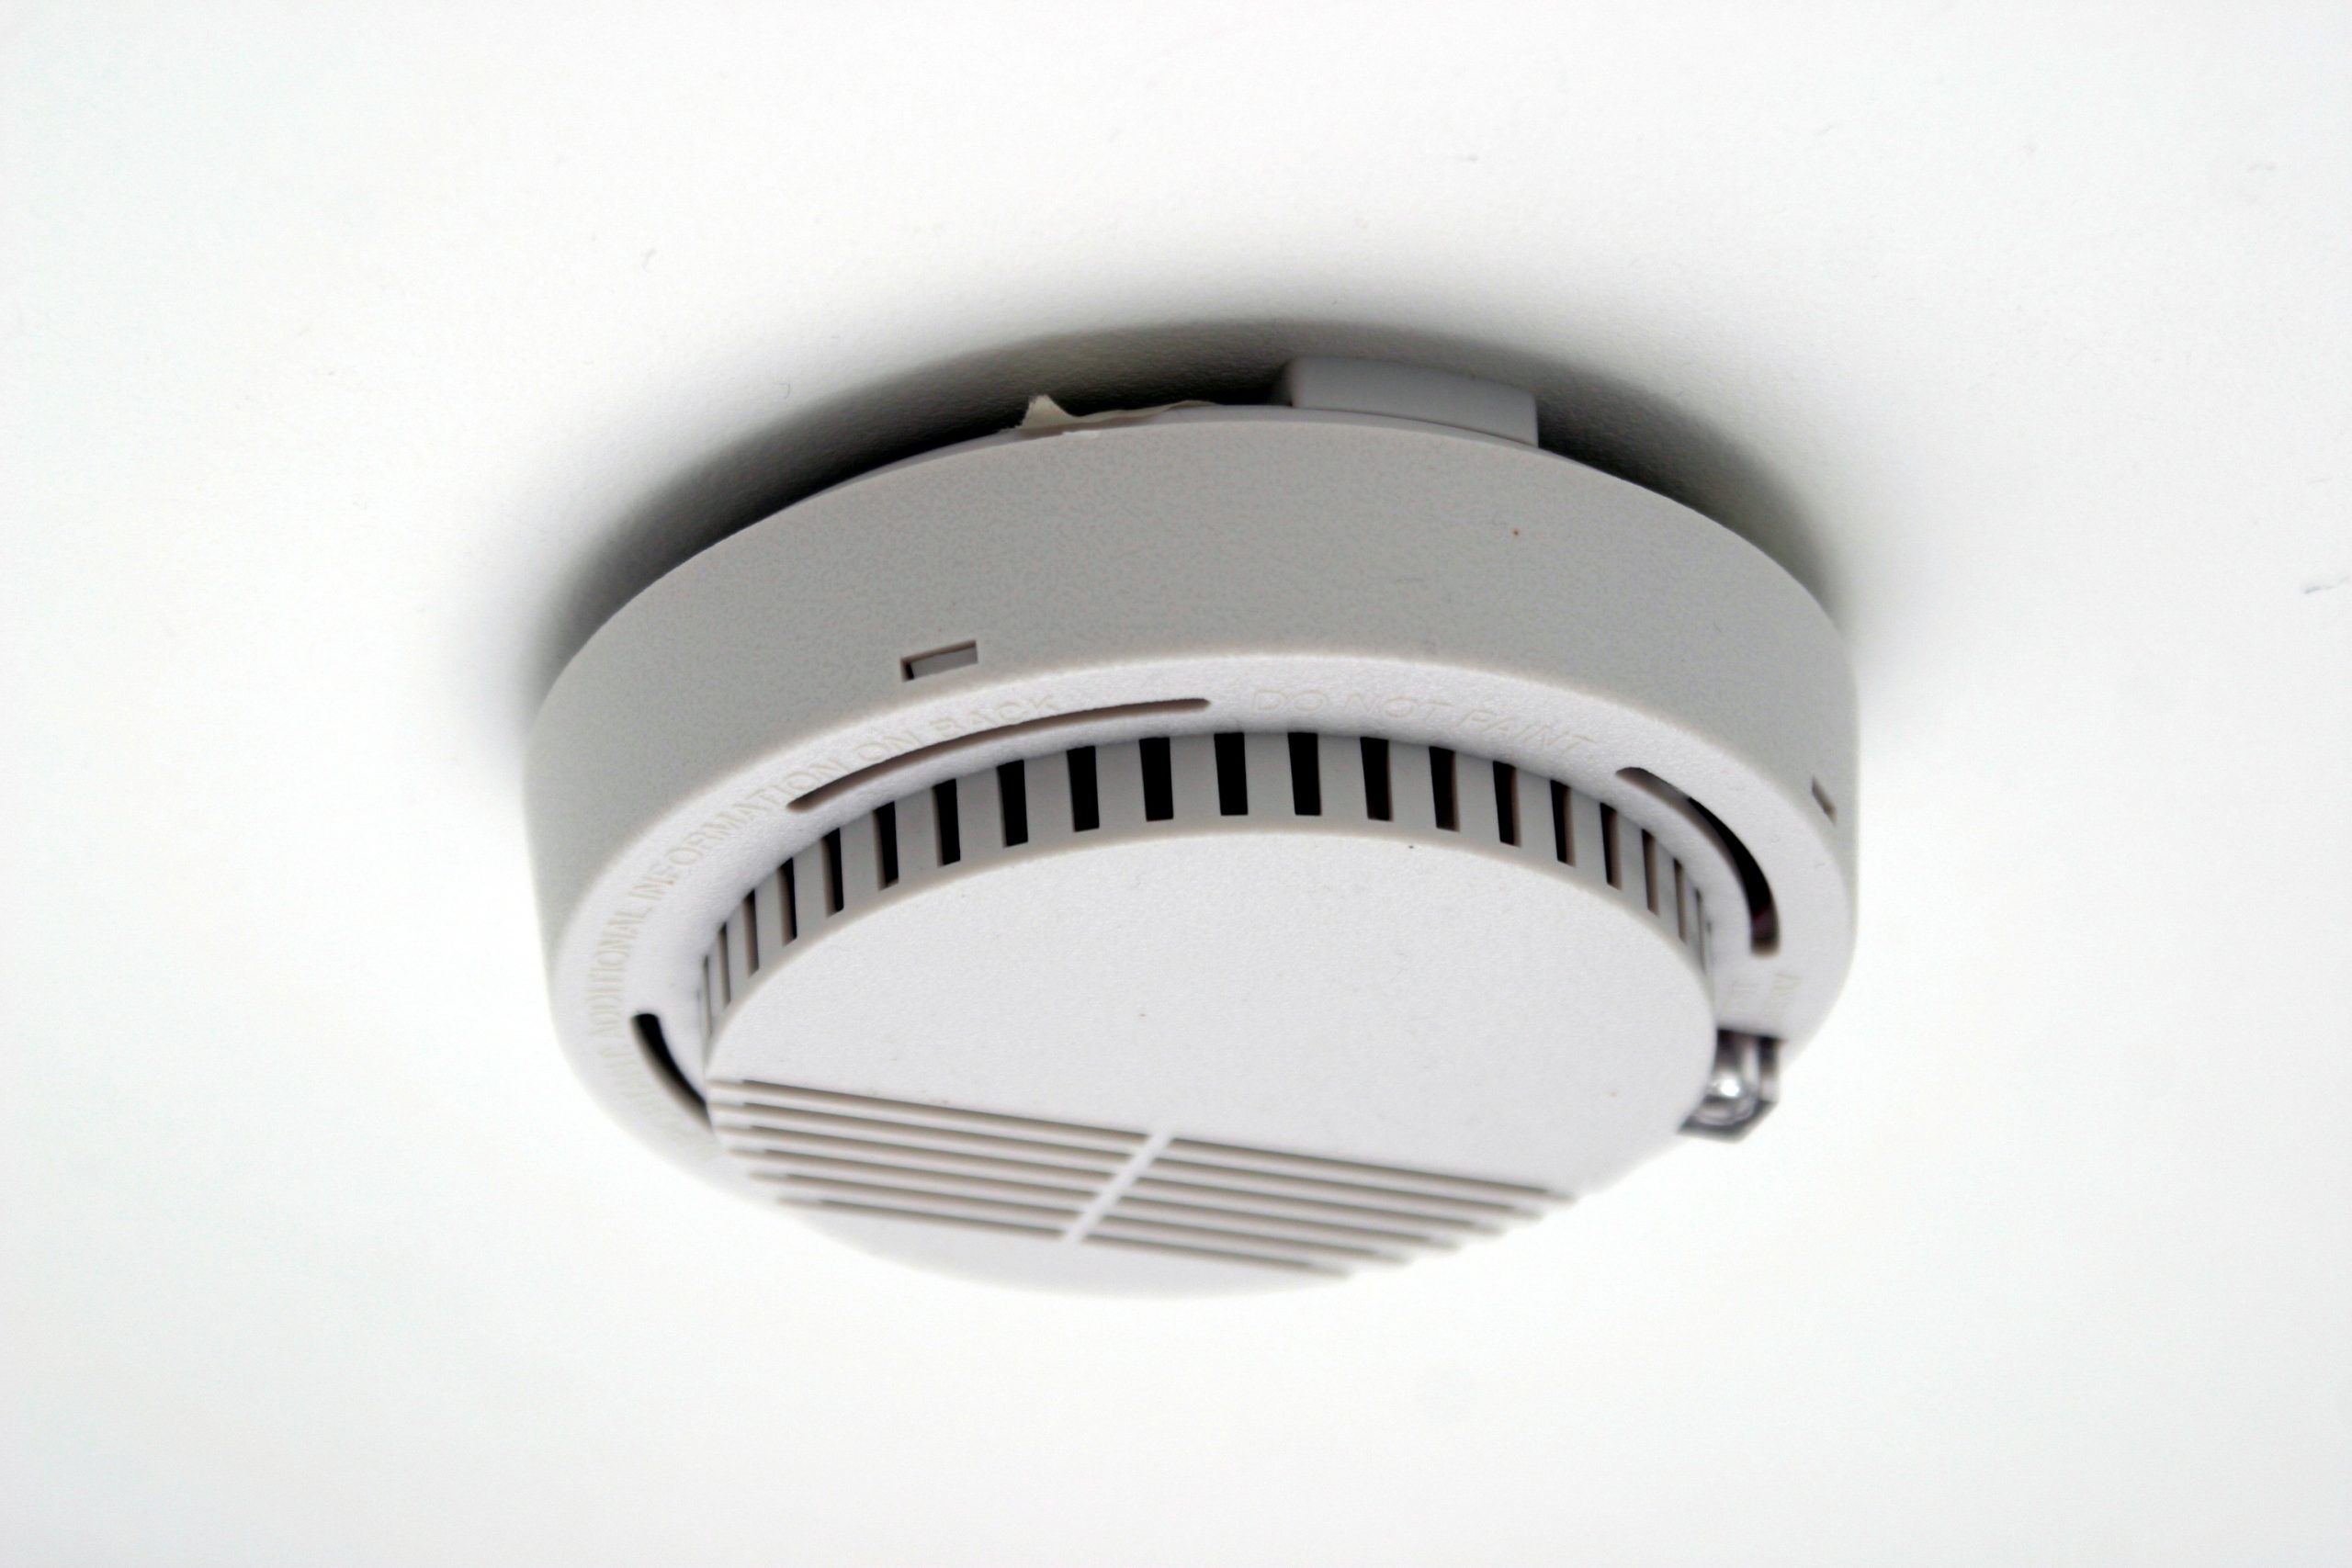 Interconnected Smoke Alarm Wiring Diagram Smoke Detector – Wikipedia Of Interconnected Smoke Alarm Wiring Diagram